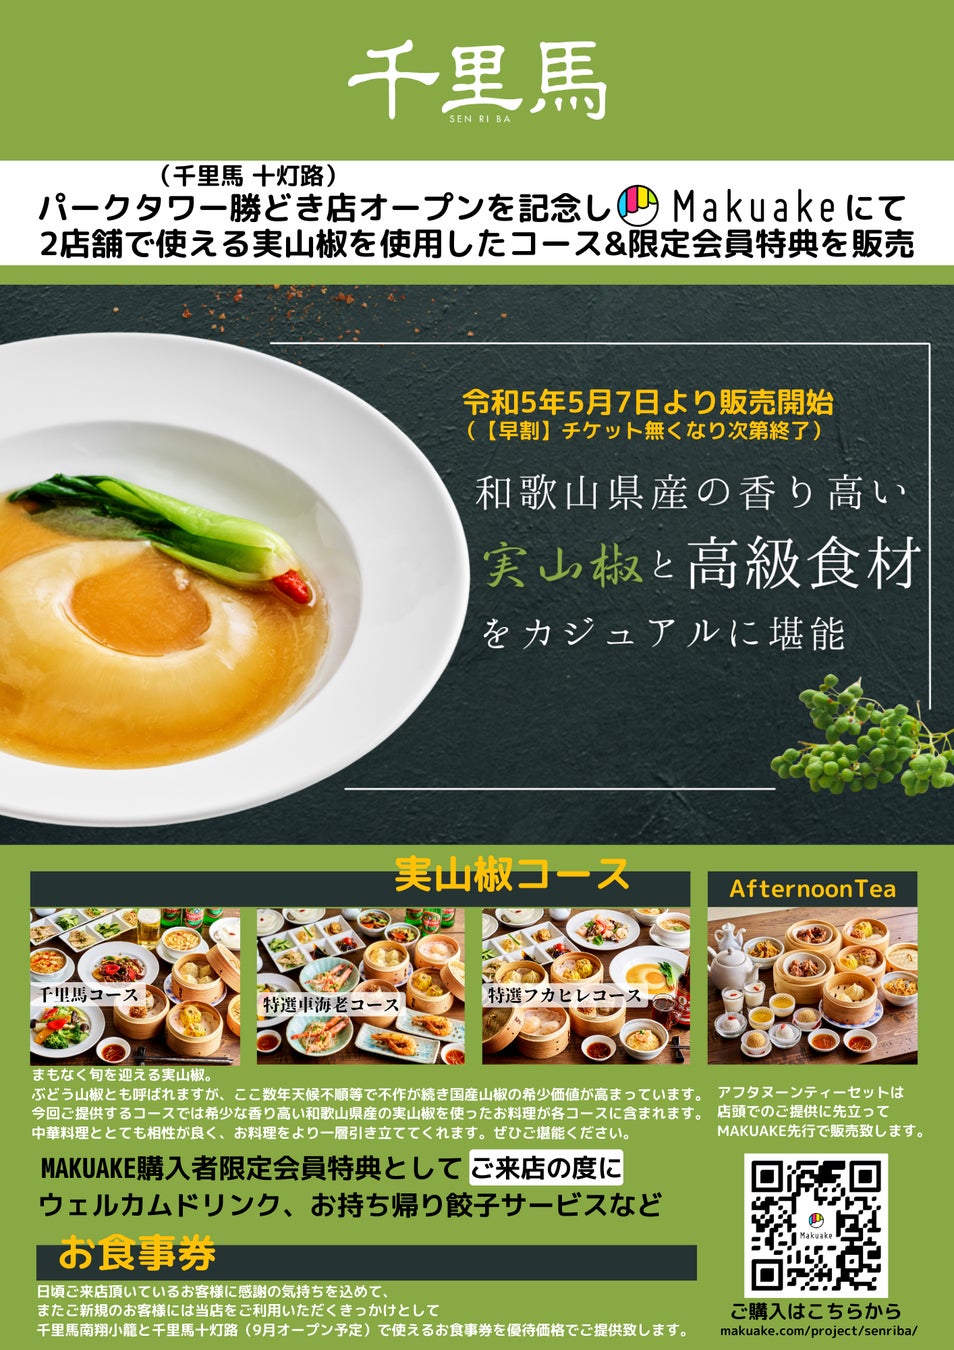 韓国の食品メーカーOTTOGI(オットギ)とクロックスによるコラボレーションアイテムが、5月12日よりatmos PINKにて限定発売